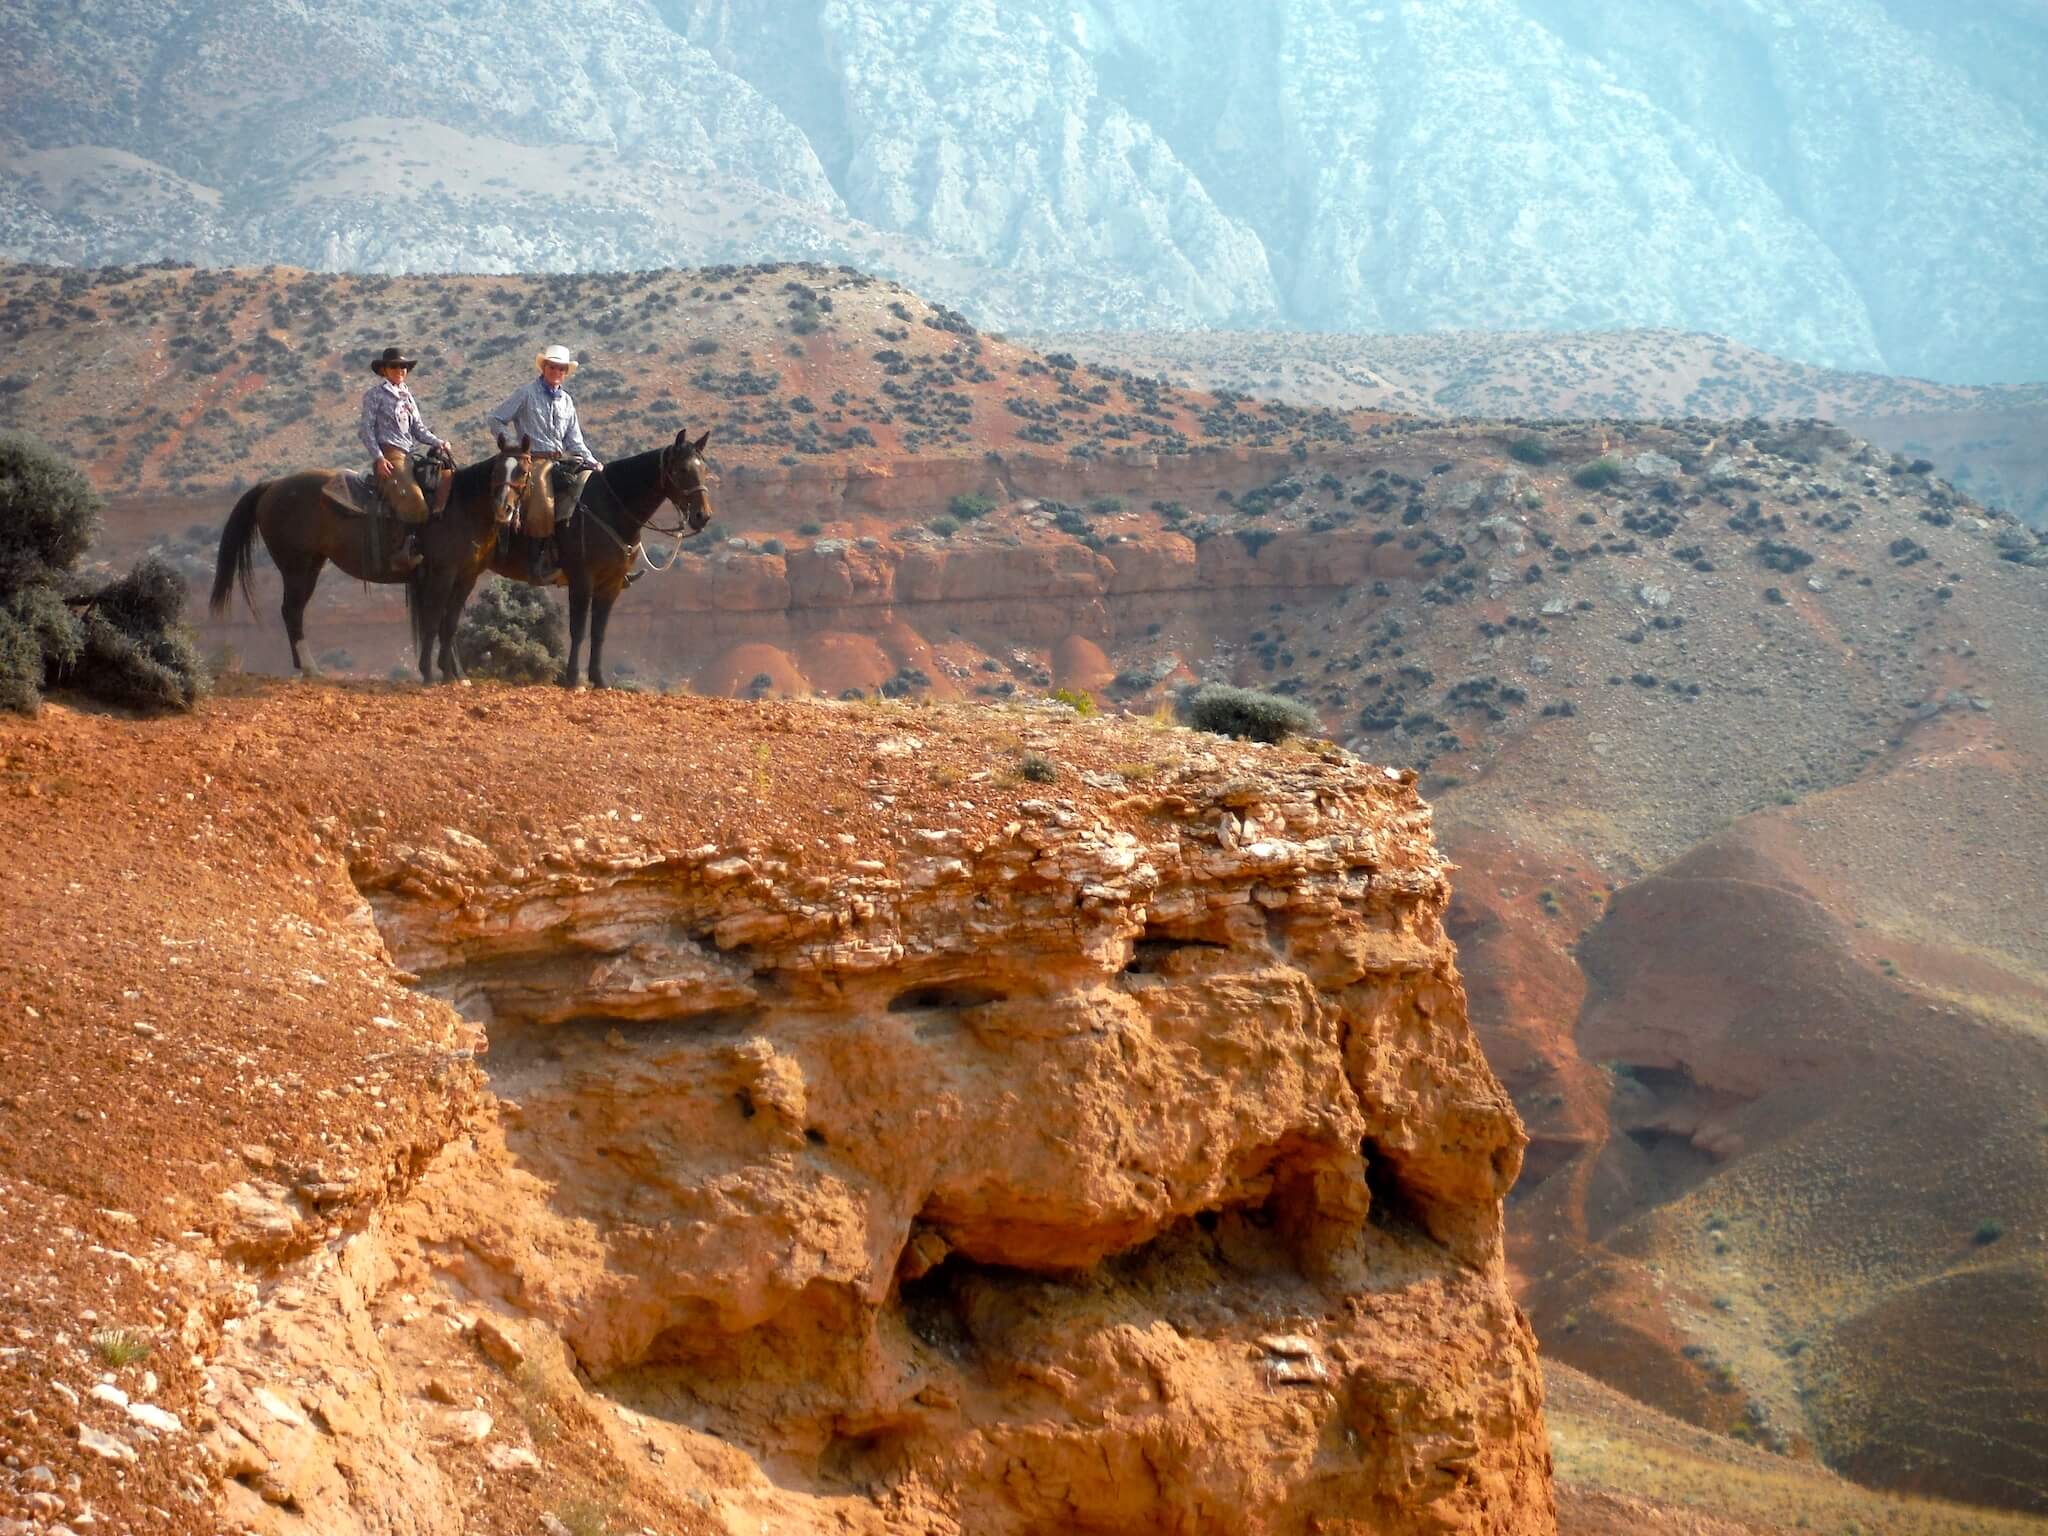 Reisverslag Ranch Vakantie te paard in Wyoming, Noord Amerika - Reisverslag en ervaring paardrijvakantie - Vakantie te paard / Reisbureau Perlan